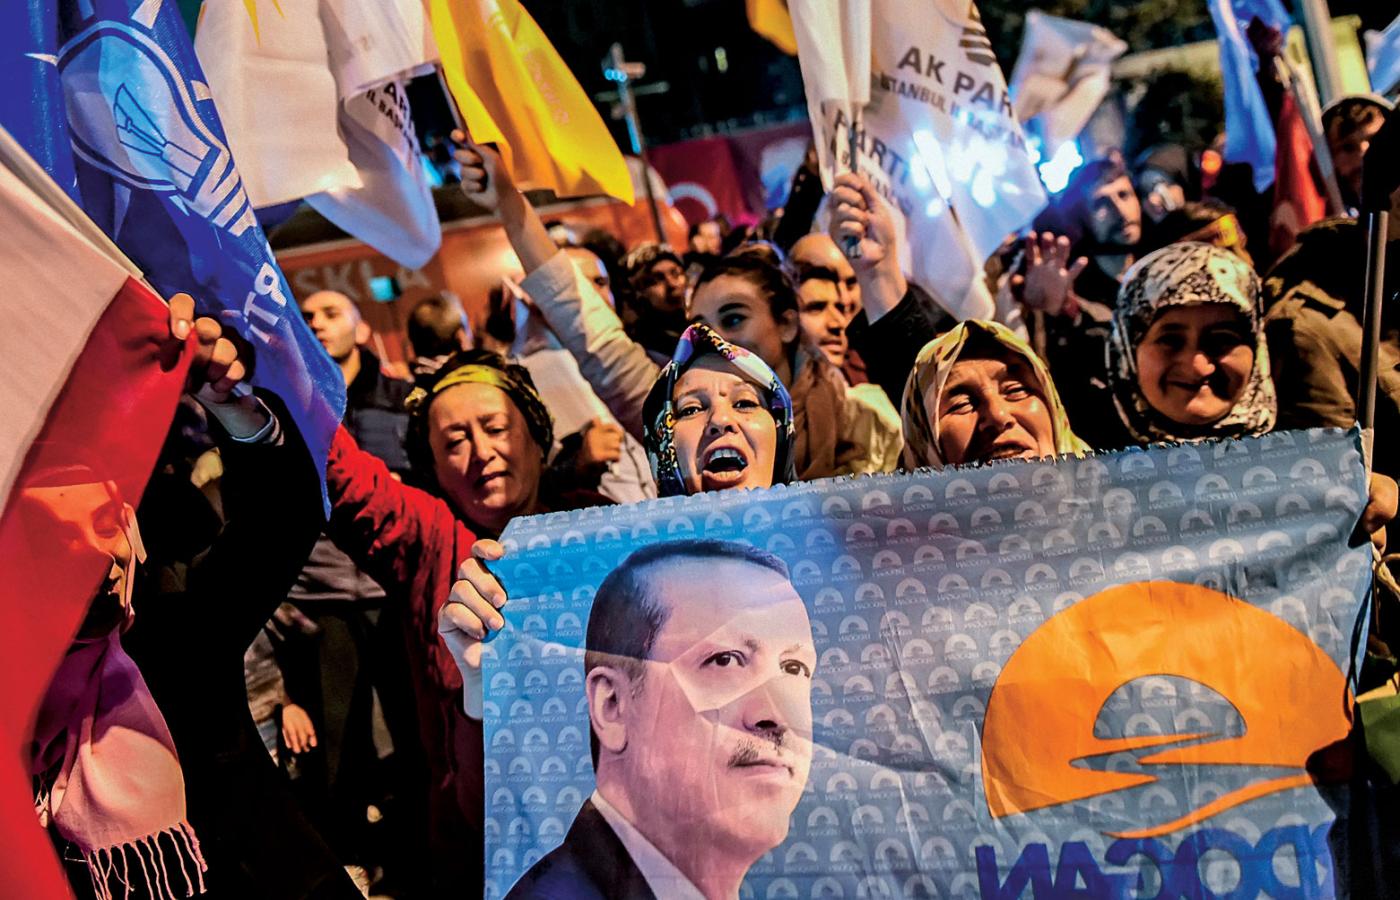 Zwolennicy partii AKP z banerem, na którym widać prezydenta Recepa Tayyipa Erdoğana, świętują ogłoszenie wstępnych wyników wyborów, Stambuł, 1 listopada 2015 r.